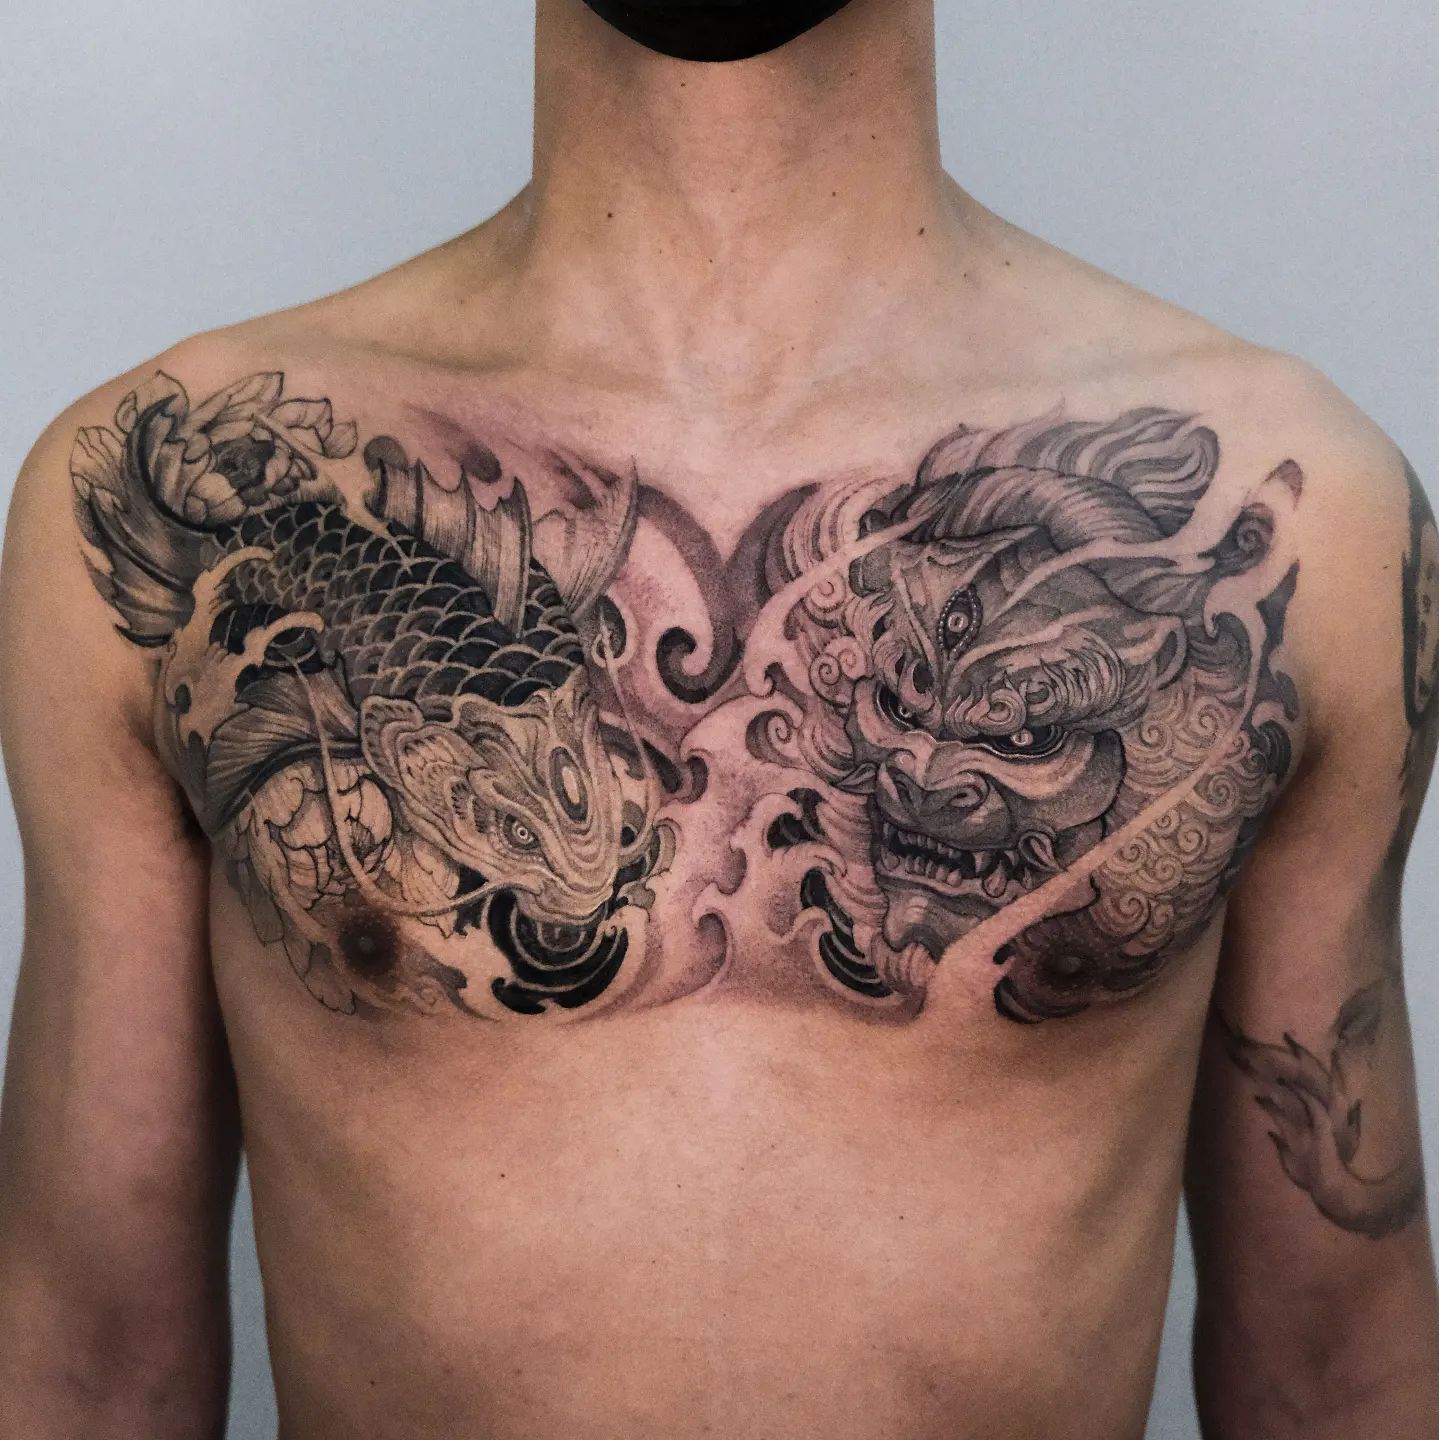 Japanese Tattoos Dallas - Irezumi Tattoos - Lone Star Tattoo